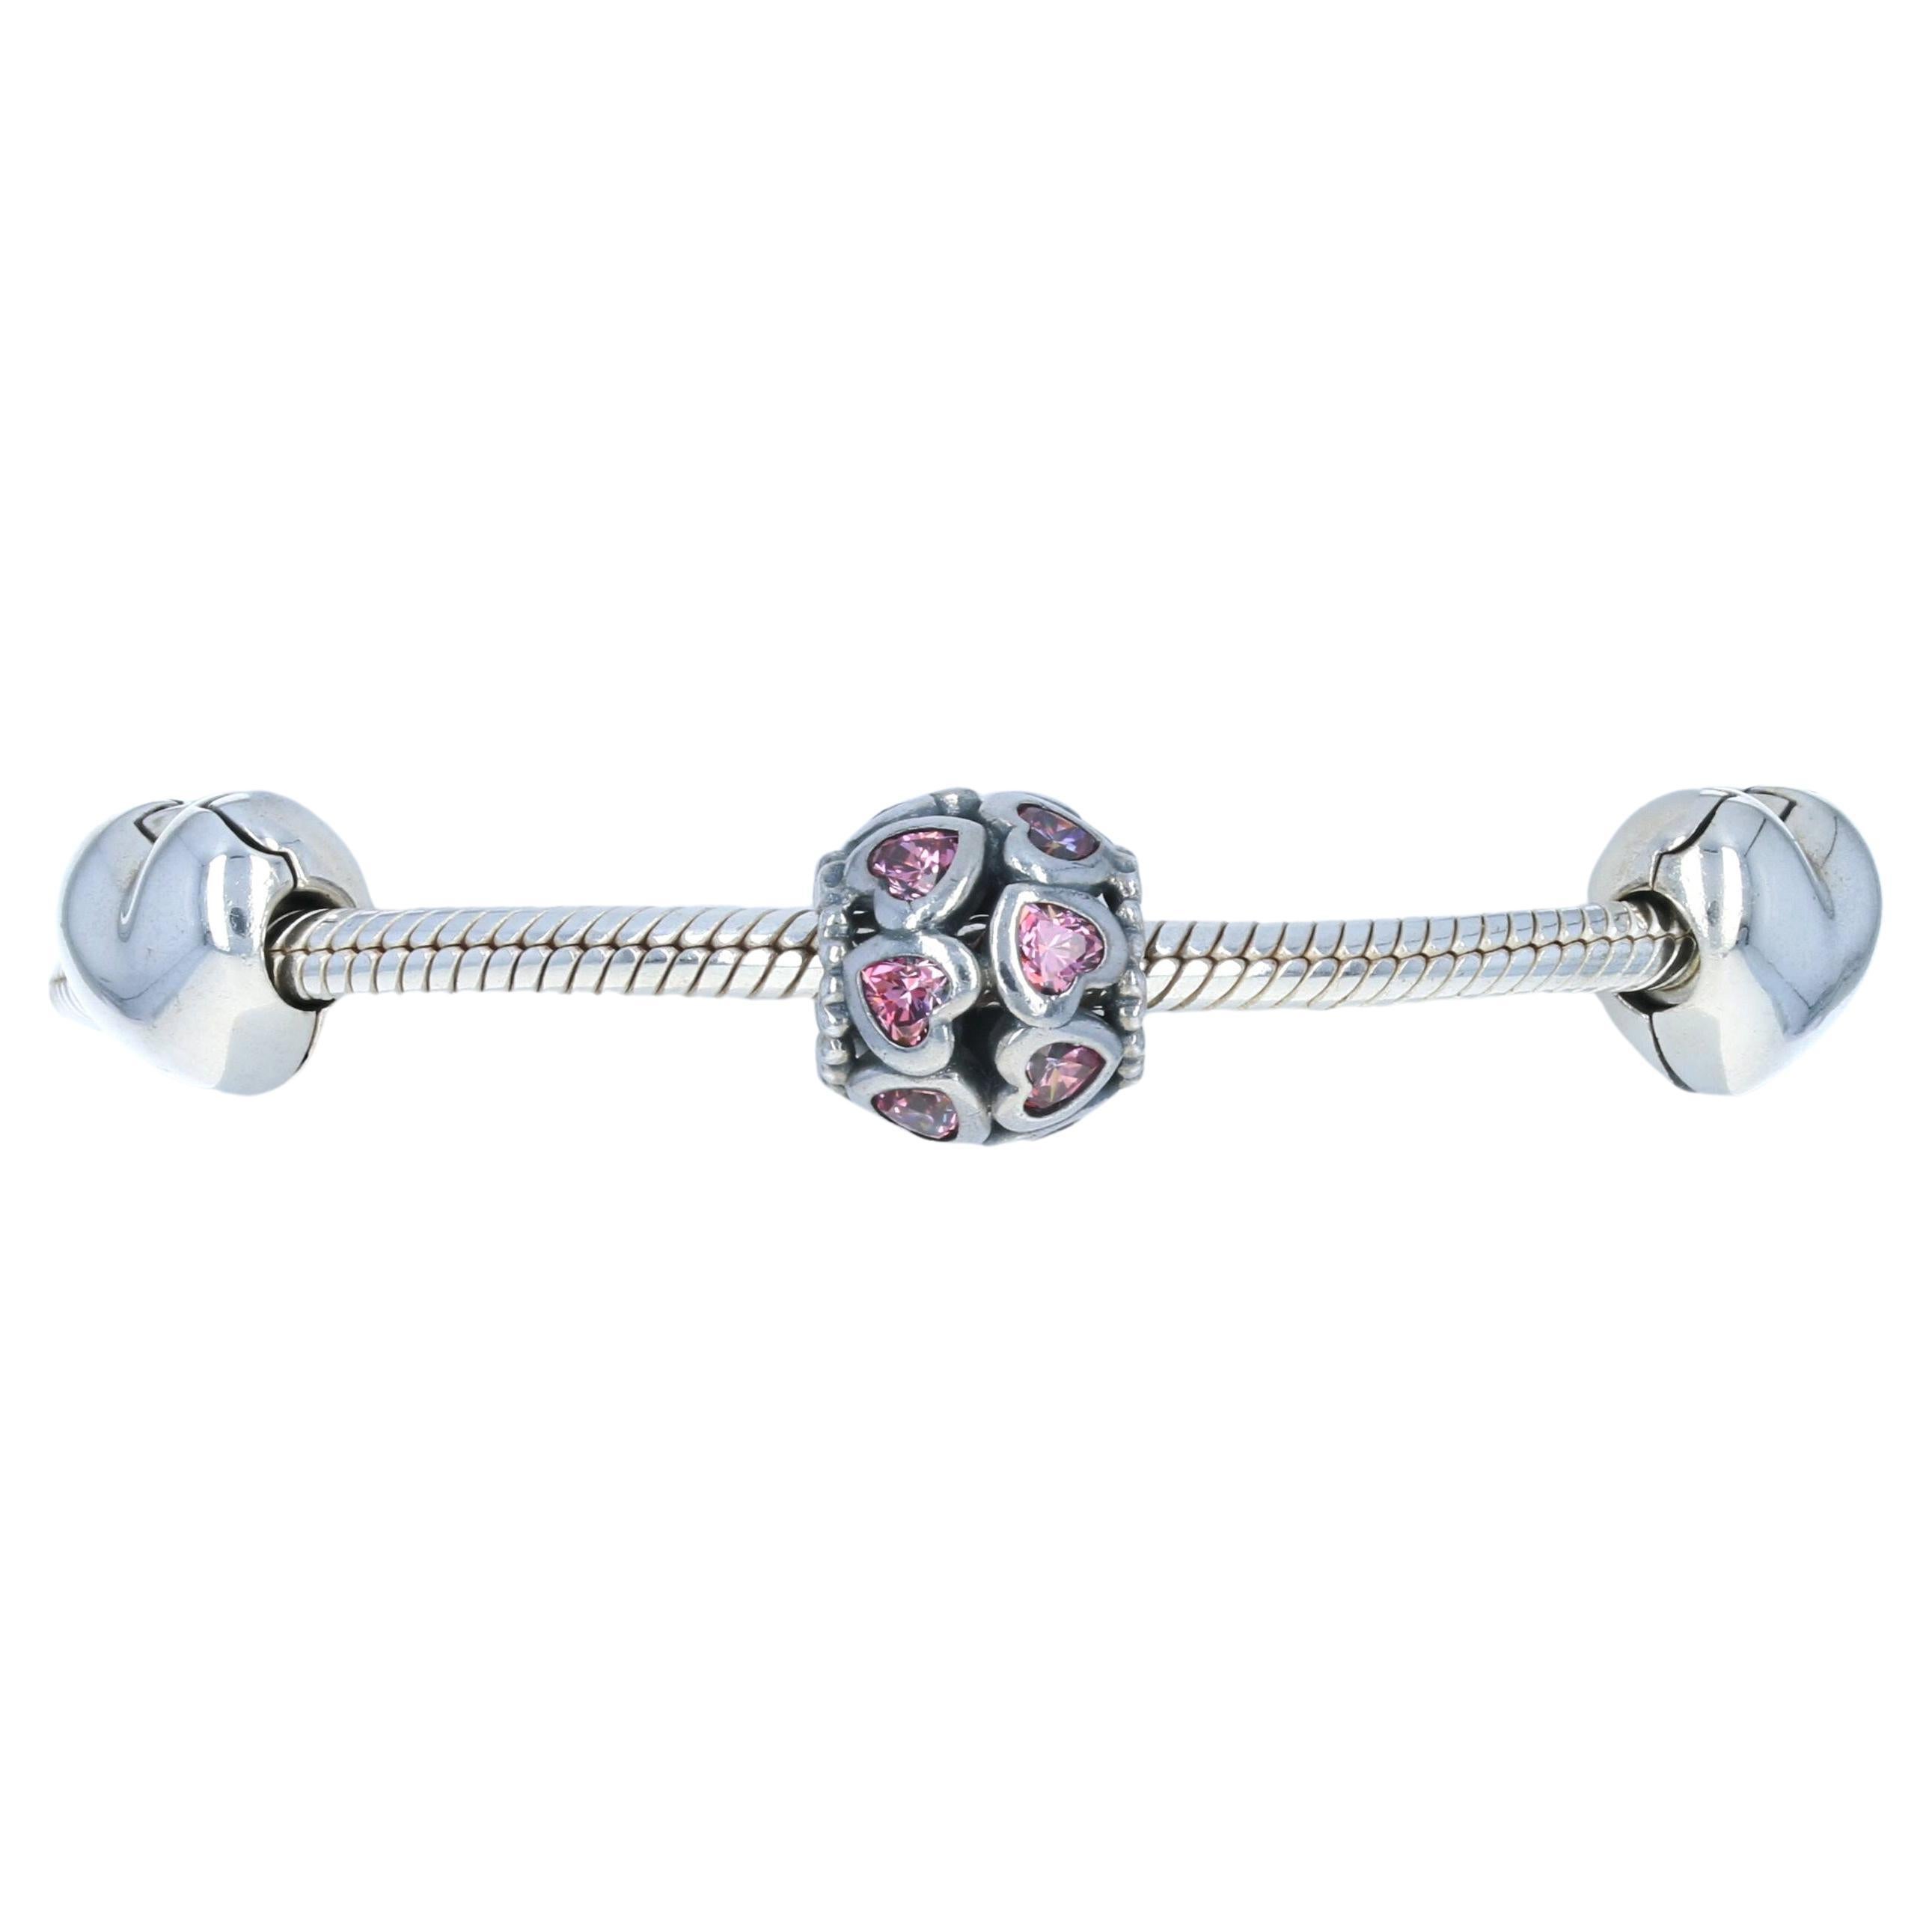 Nouveau Bracelet breloque Pandora From the Heart Ltd USB793019 en argent sterling